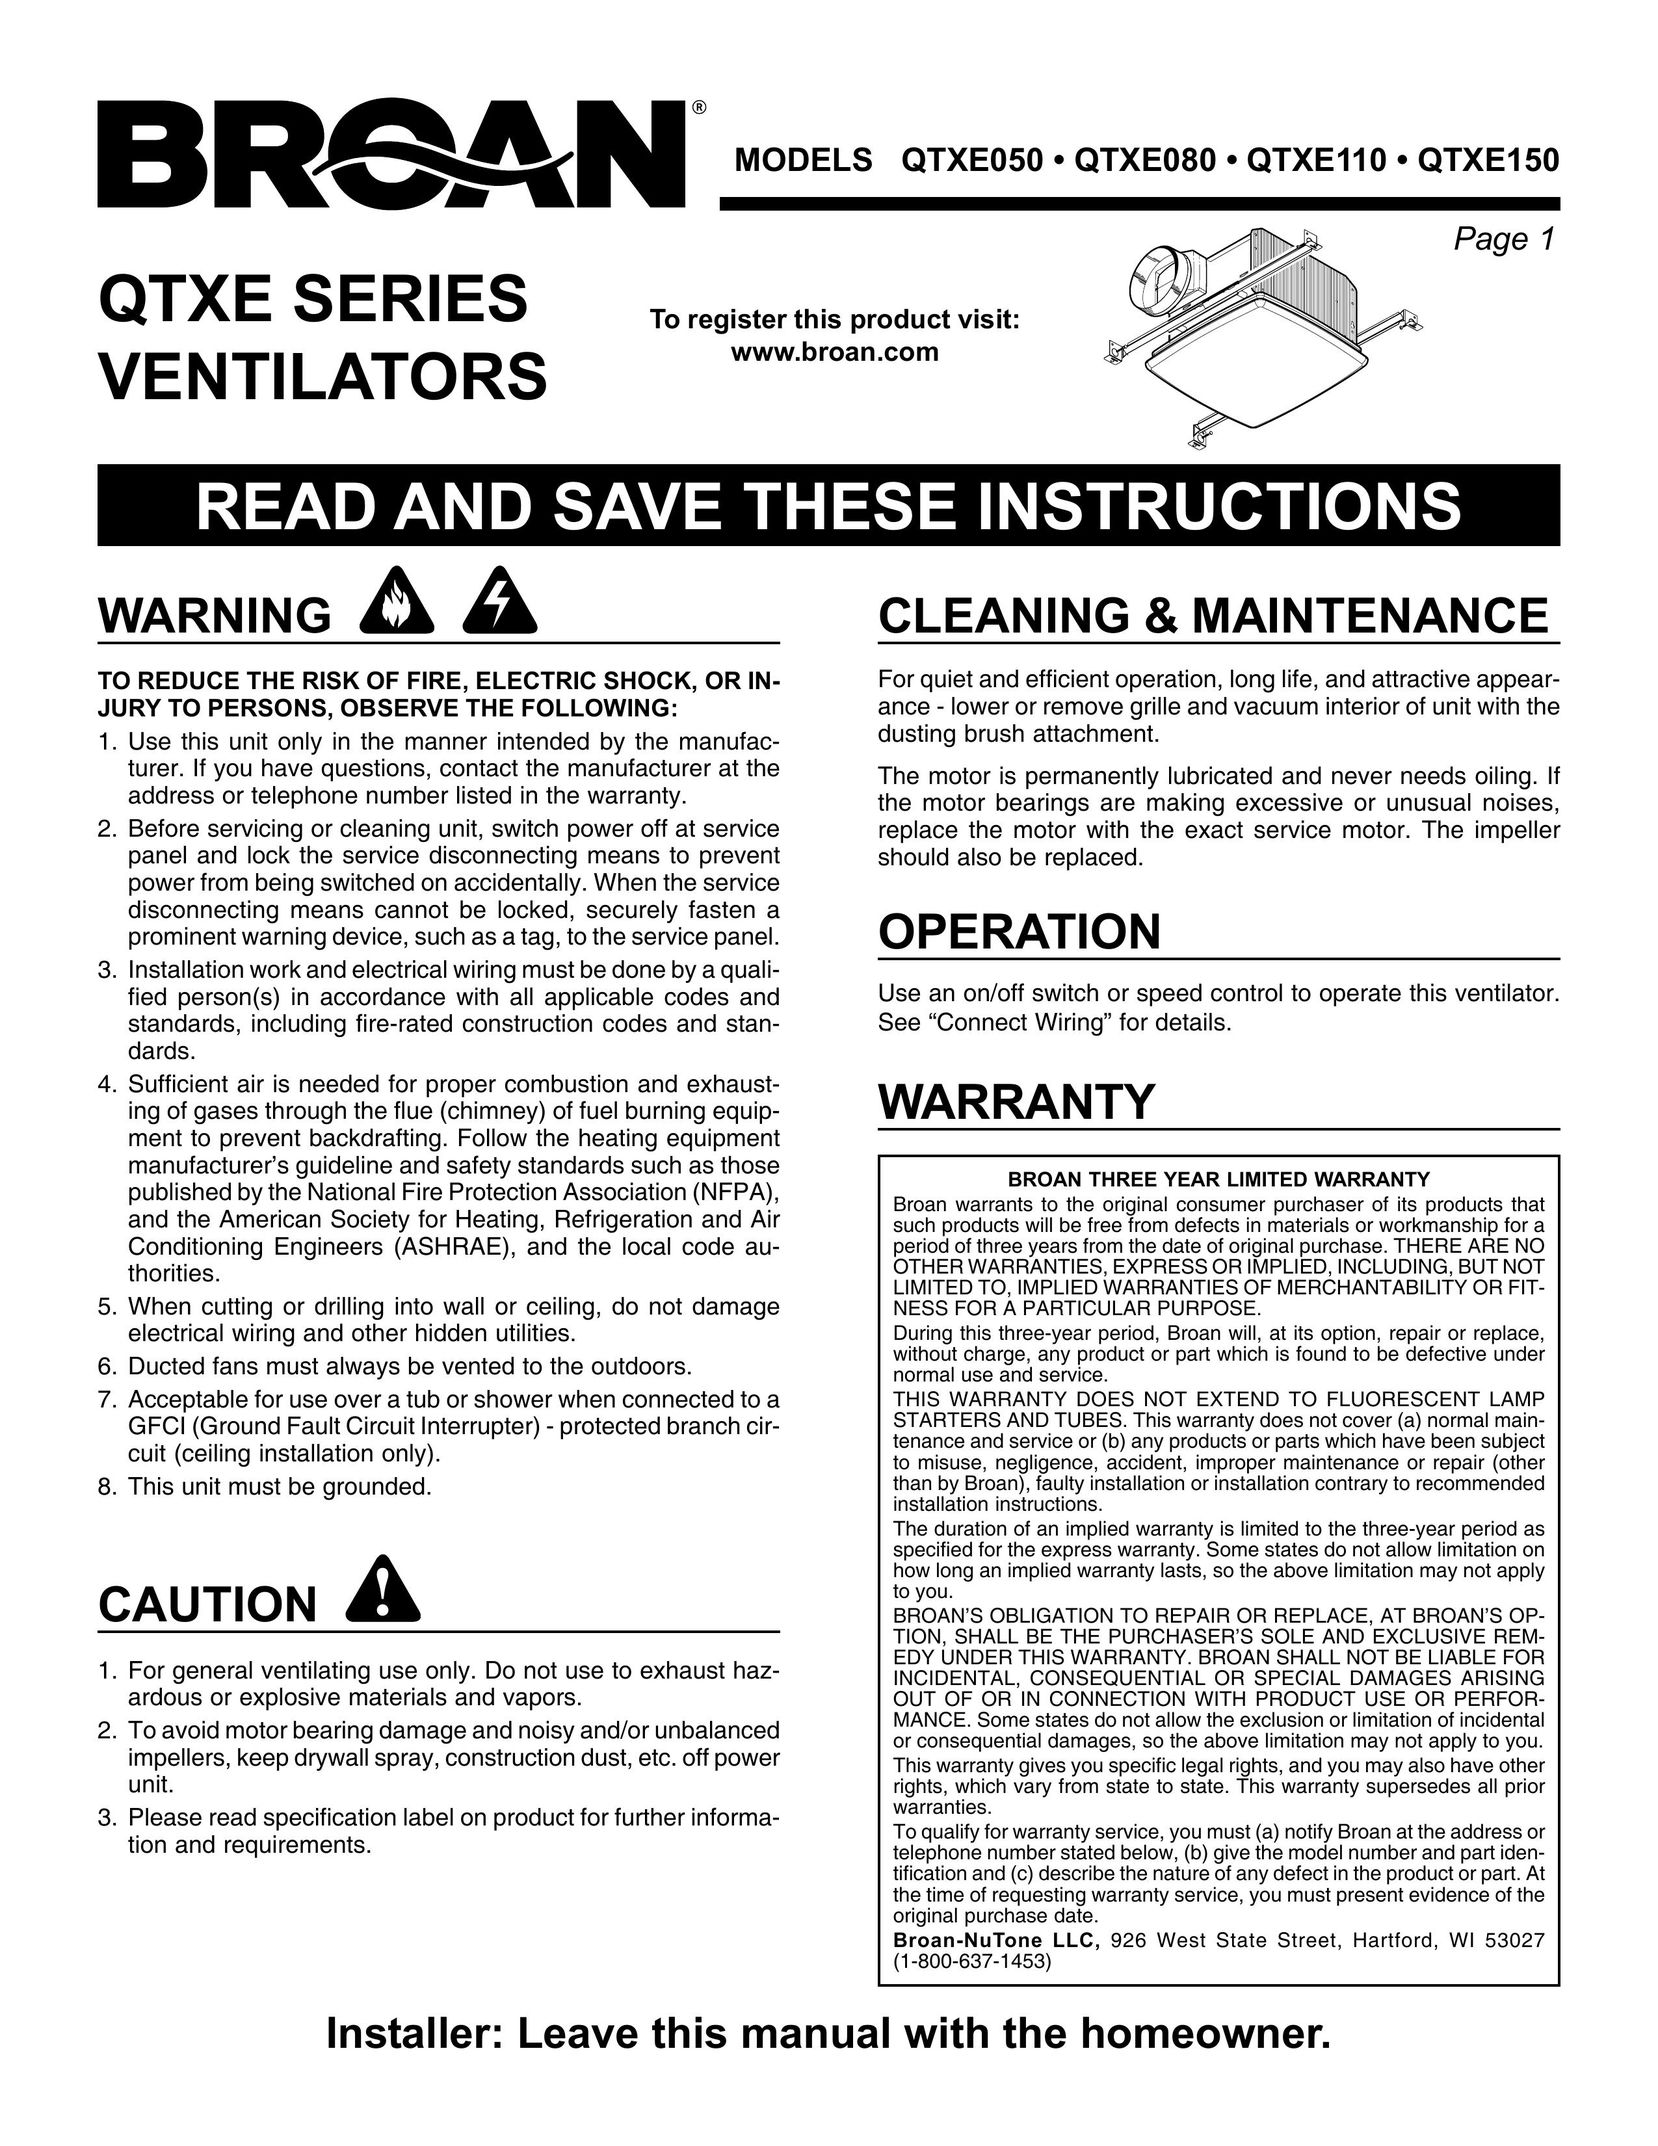 Broan QTXE080 Fan User Manual